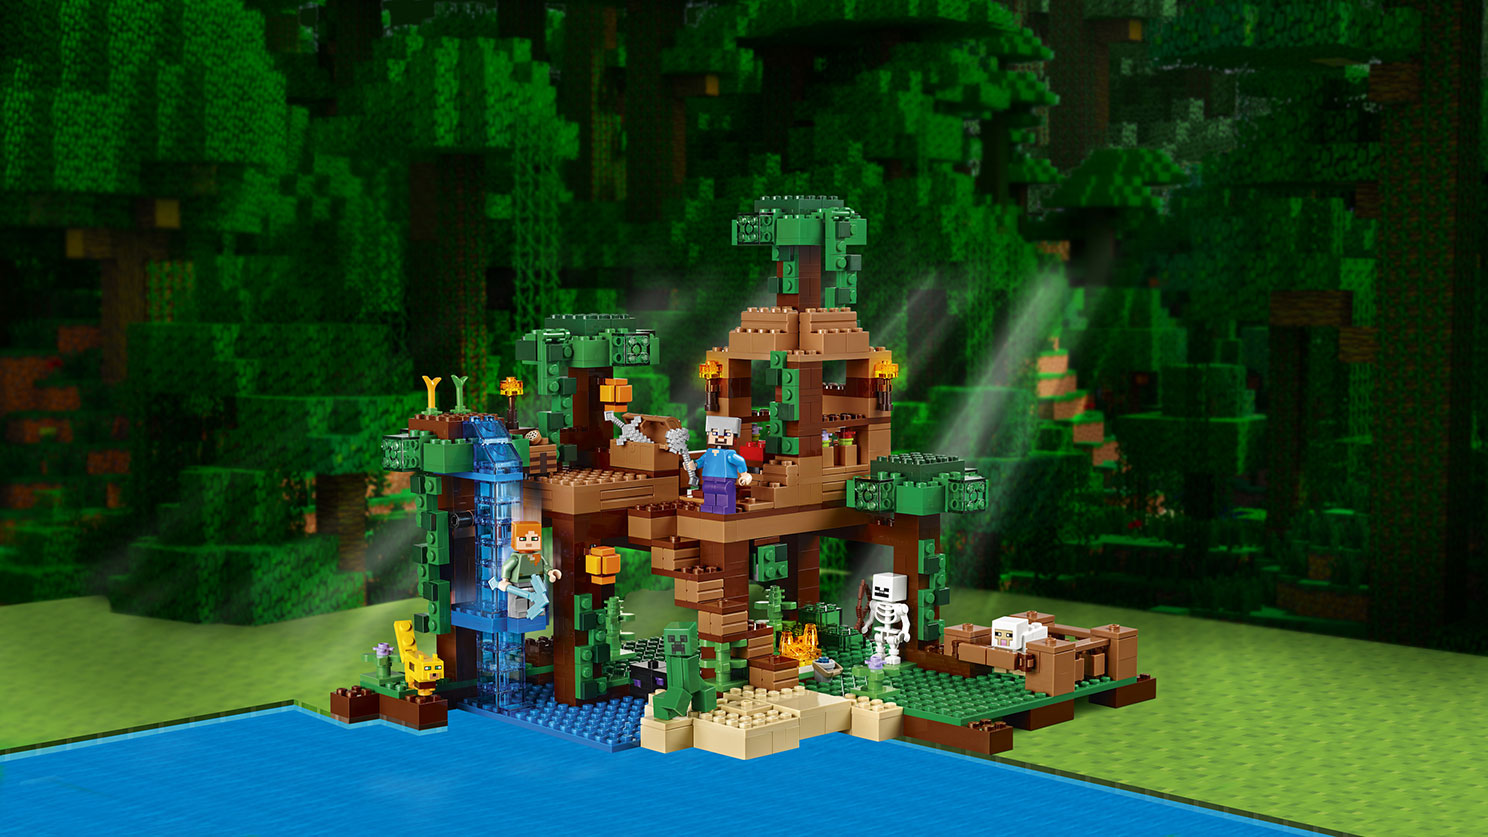 ジャングル ツリーハウス レゴ マインクラフト セット Lego Comキッズ